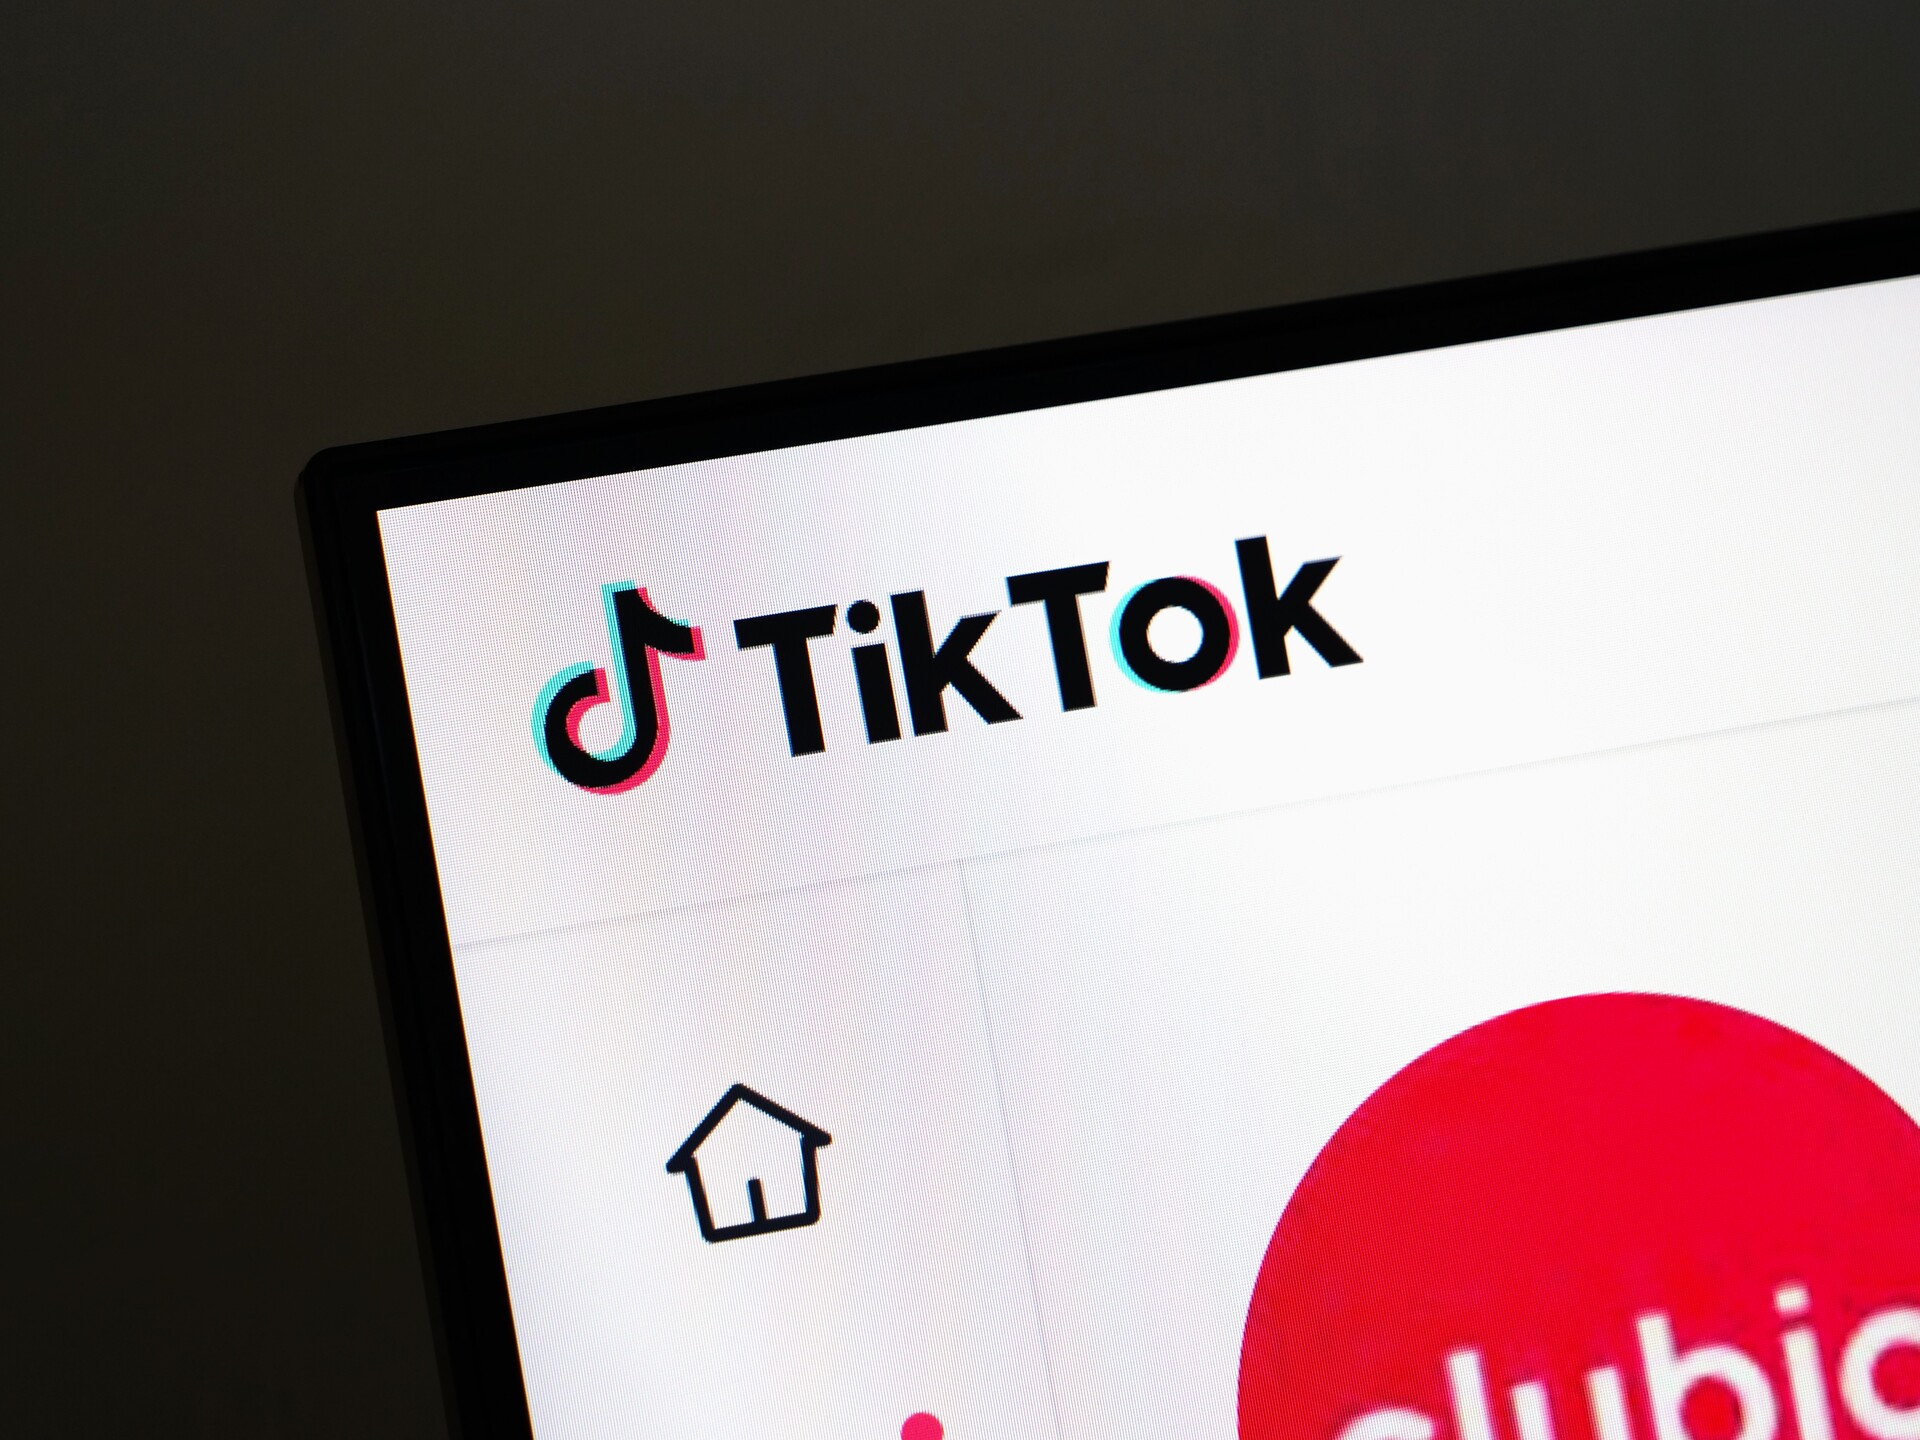 La consécration pour TikTok en France ! L'INA archive les meilleures vidéos, évoquant leur 